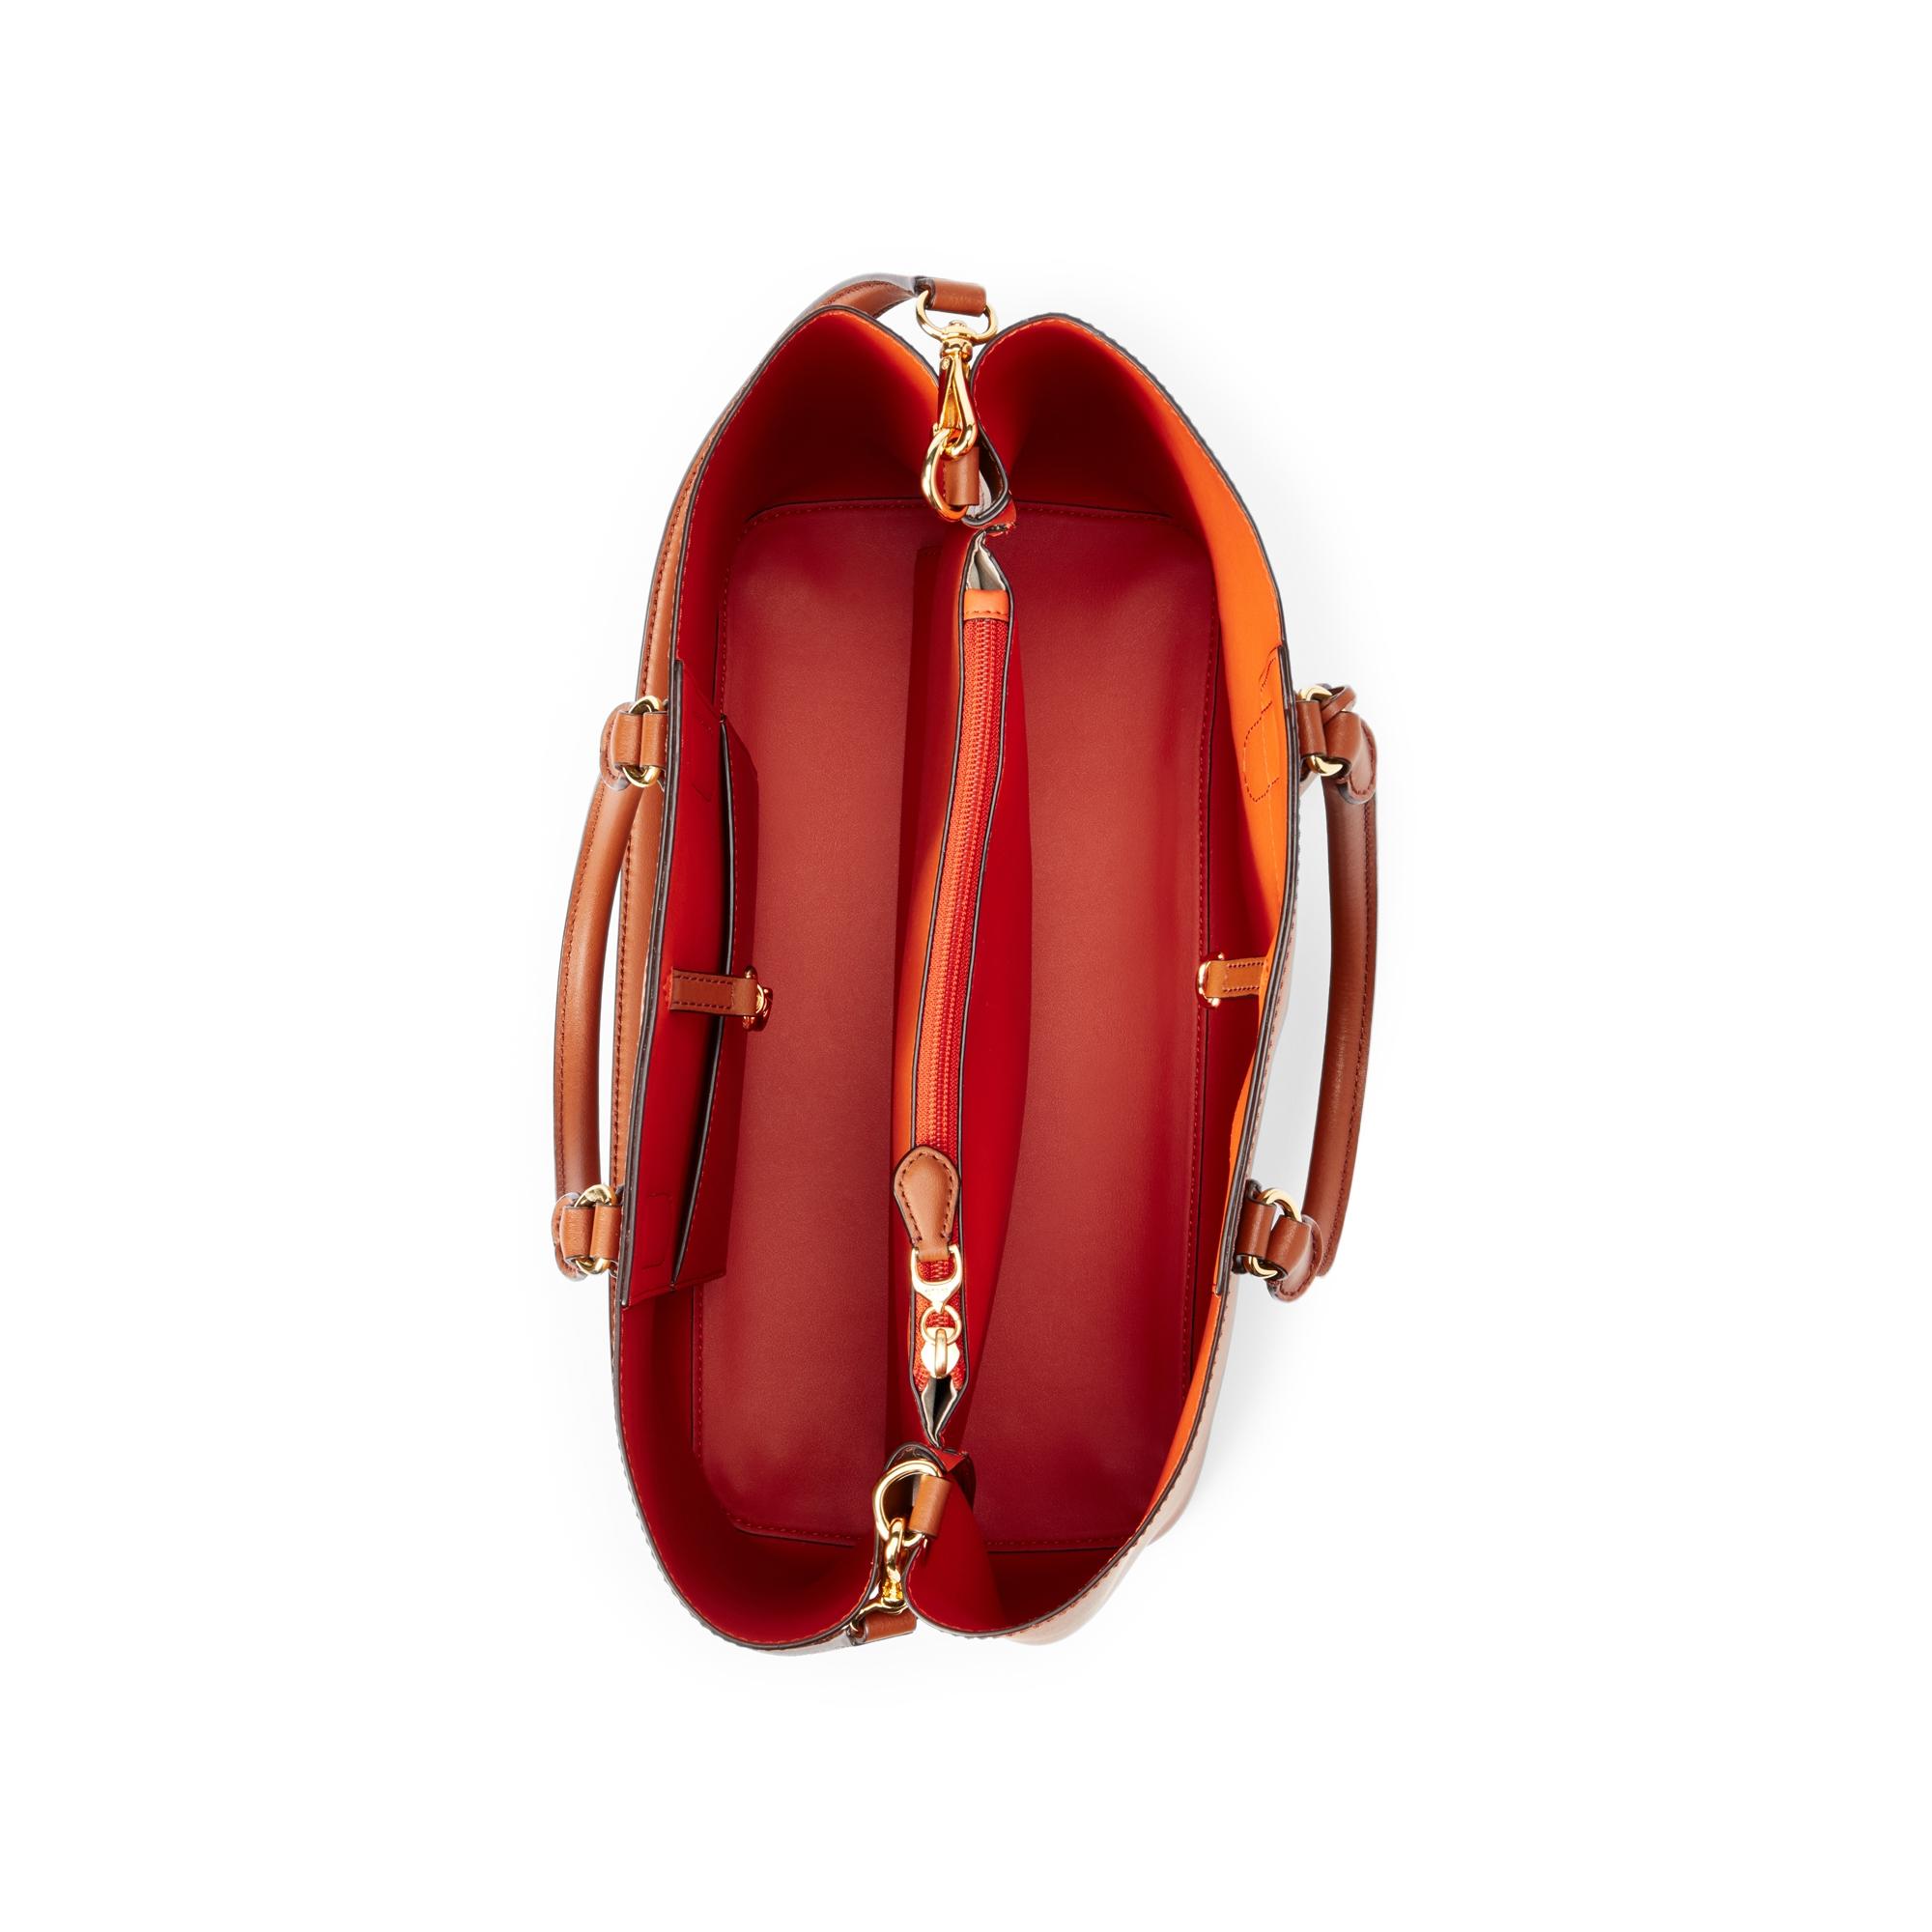 Lauren Ralph Lauren Dryden Marcy Large Leather Satchel Handbag Tan/Orange